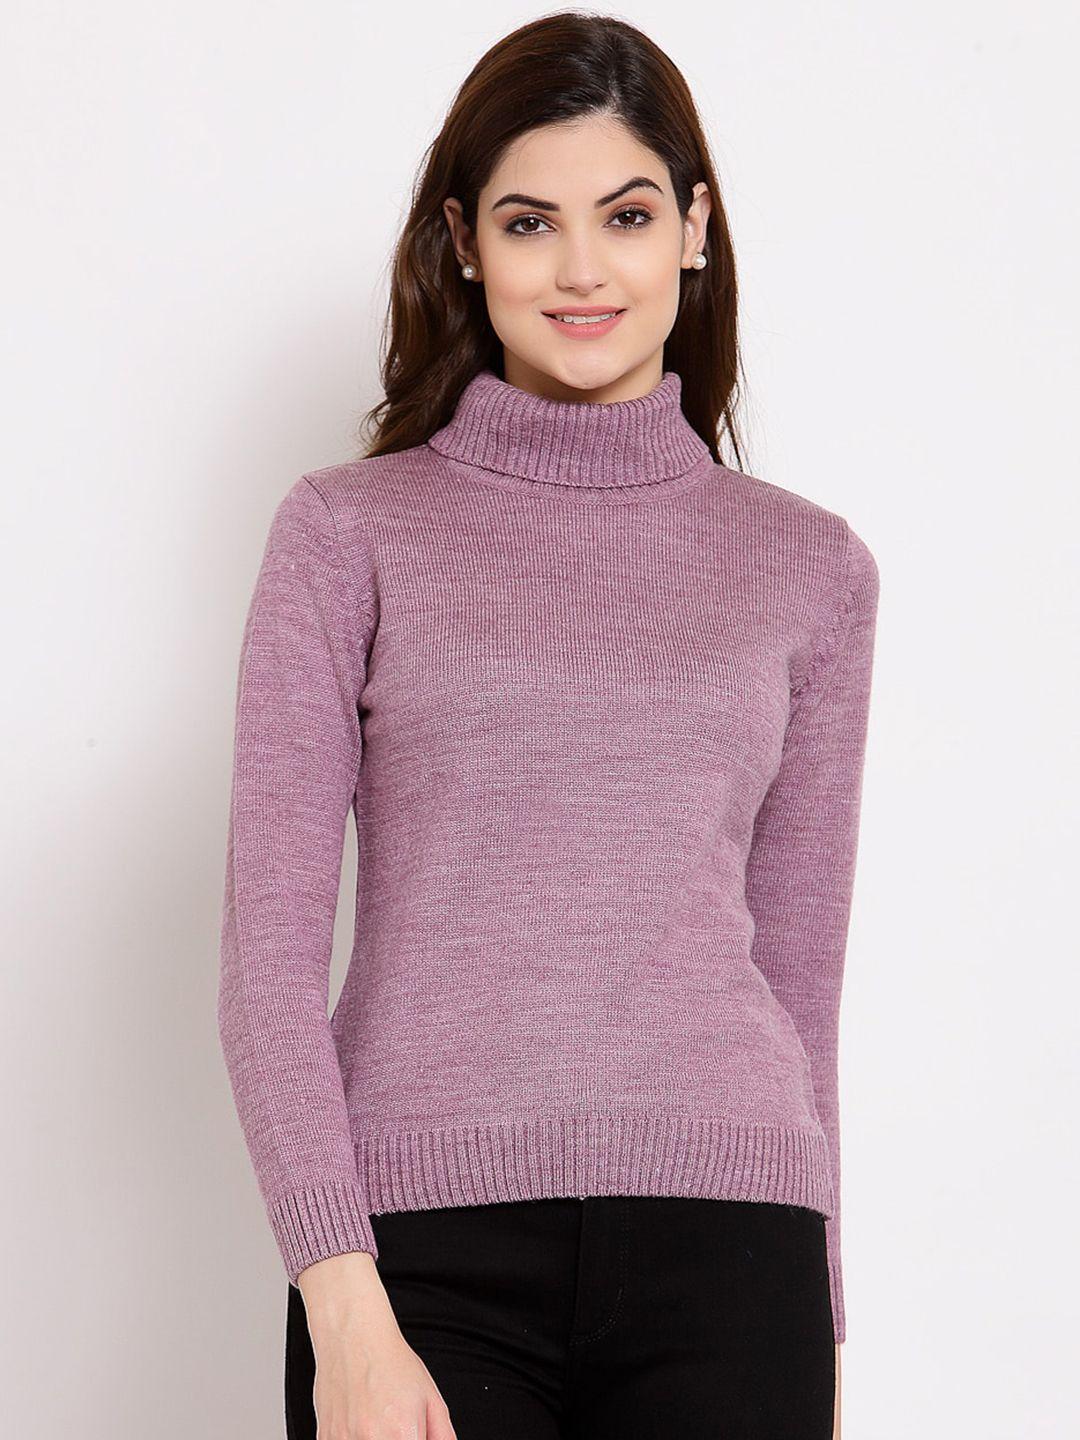 style-quotient-women-lavender-sweater